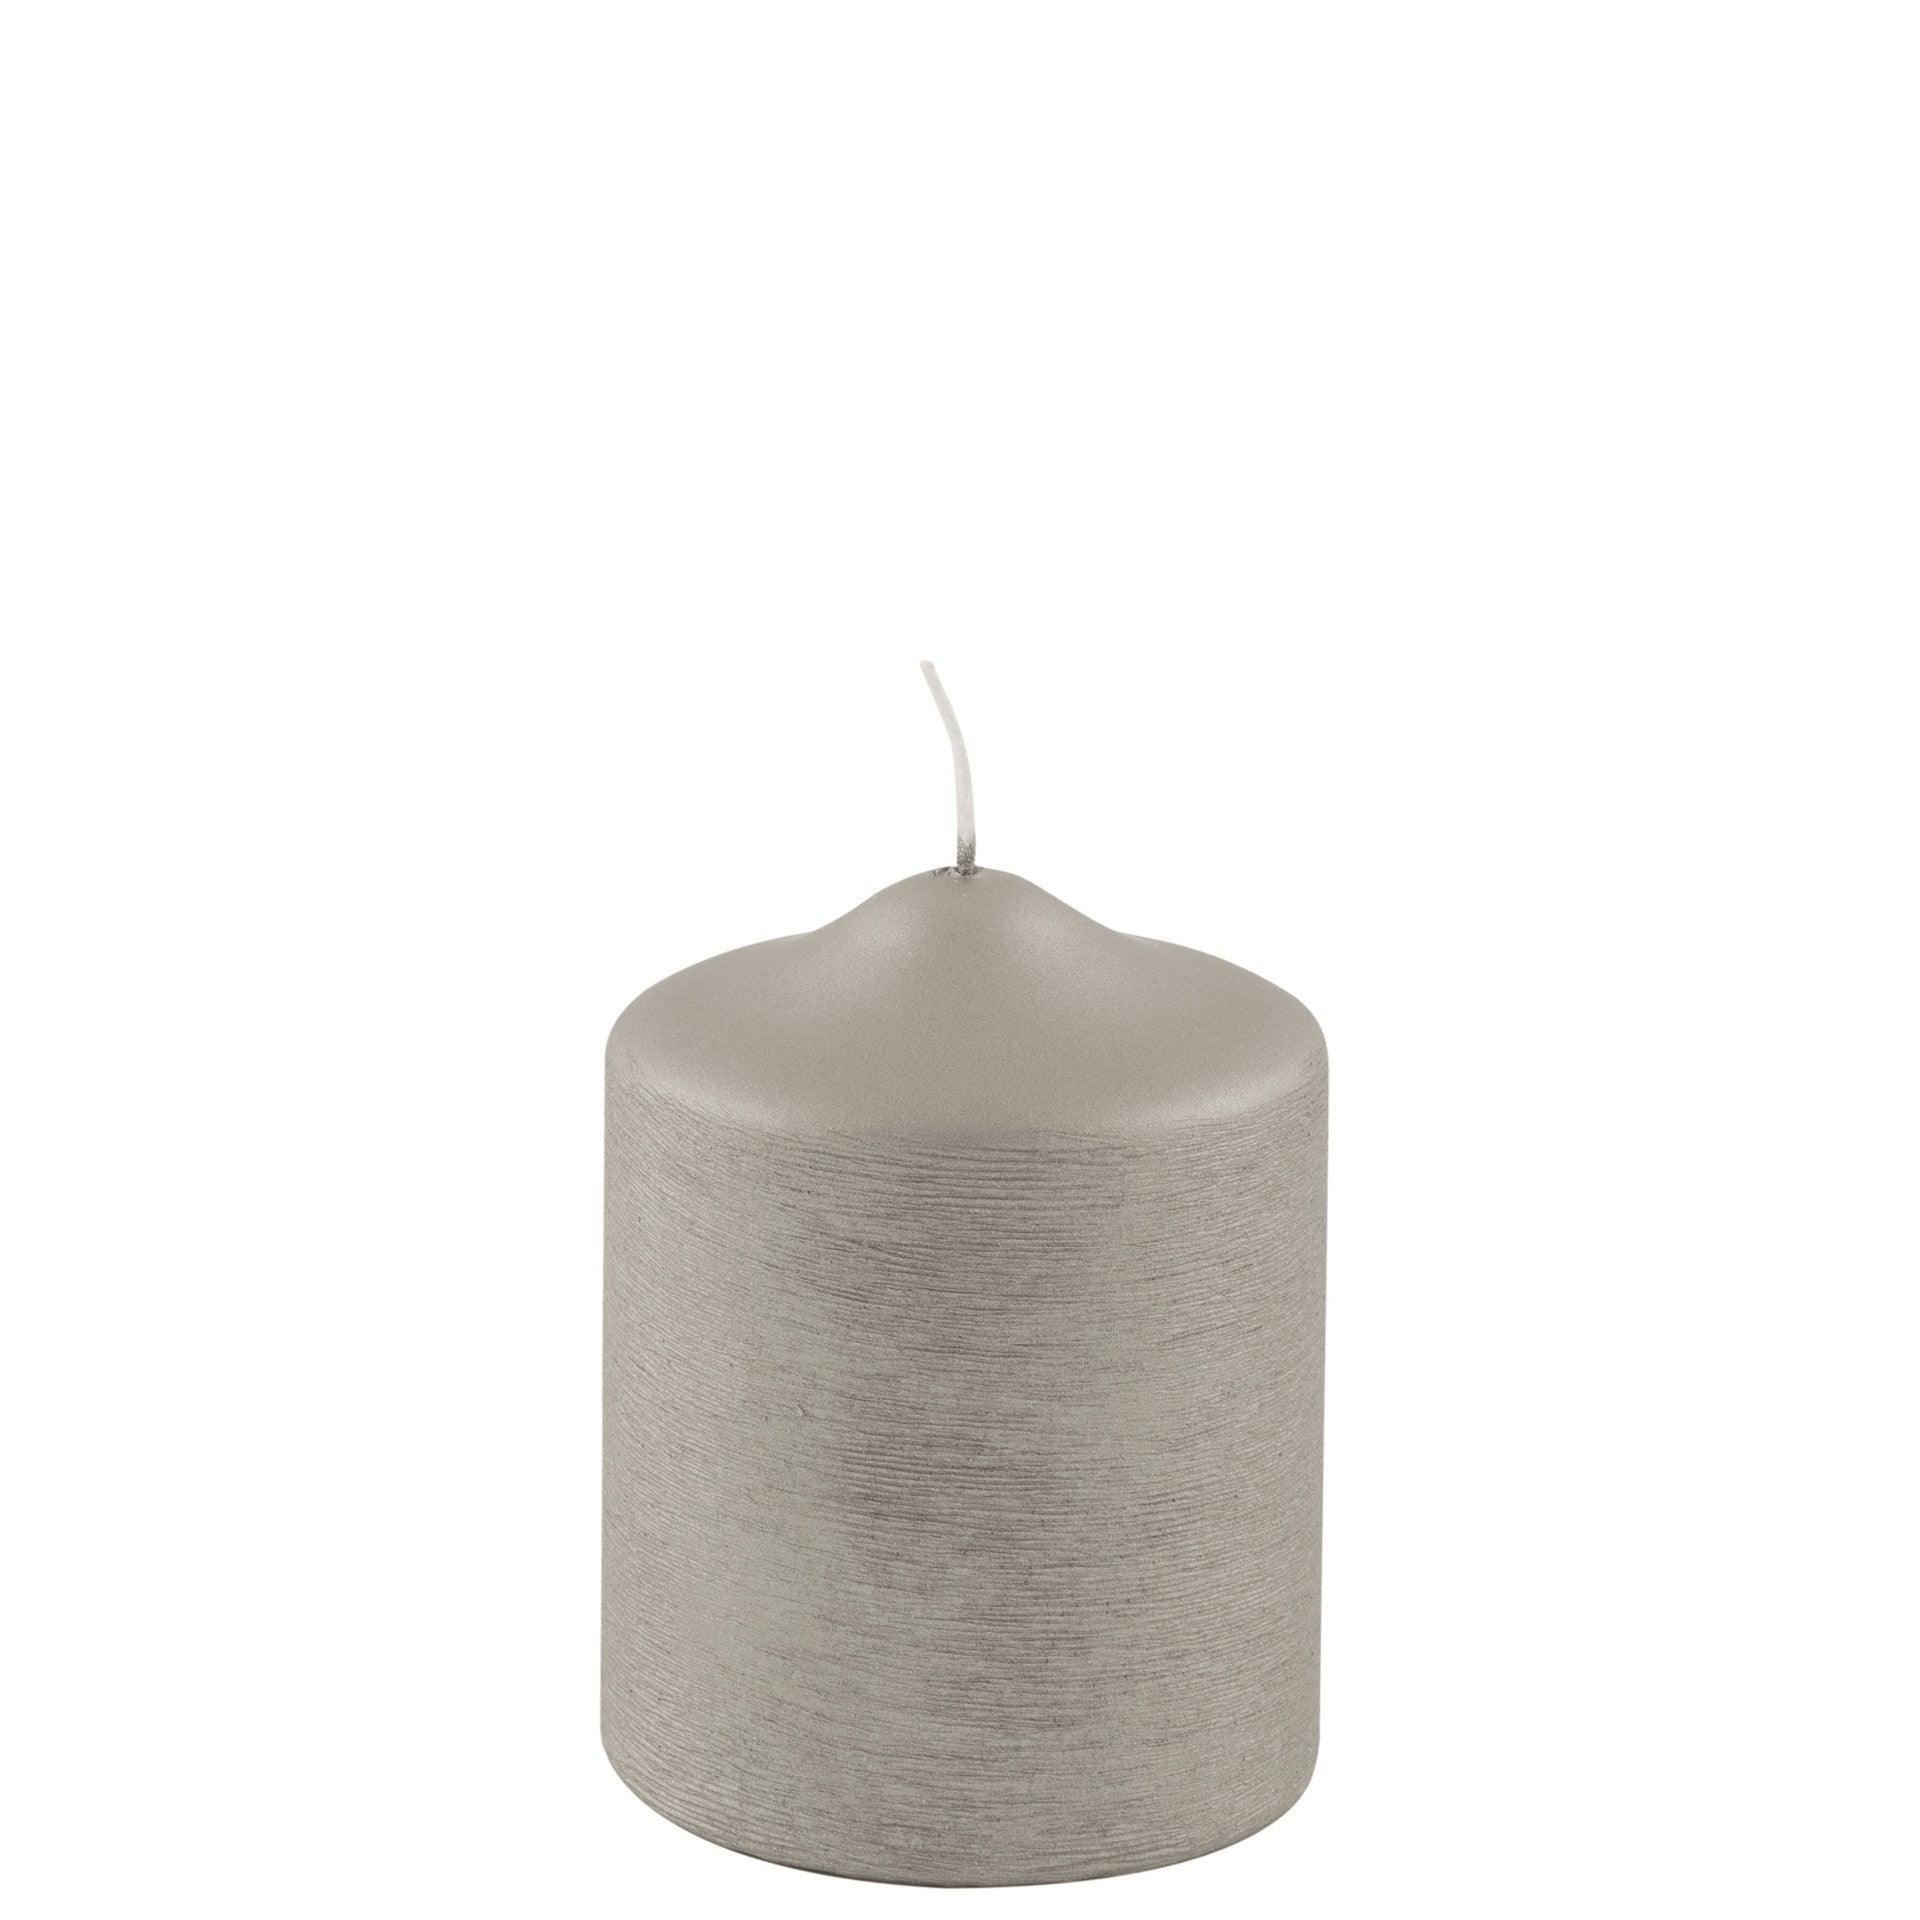 Fink Candle Stumpenkerze metallic gebürstet Stein 10cm - HomeDesign Knaus wir schaffen Inspirationen 